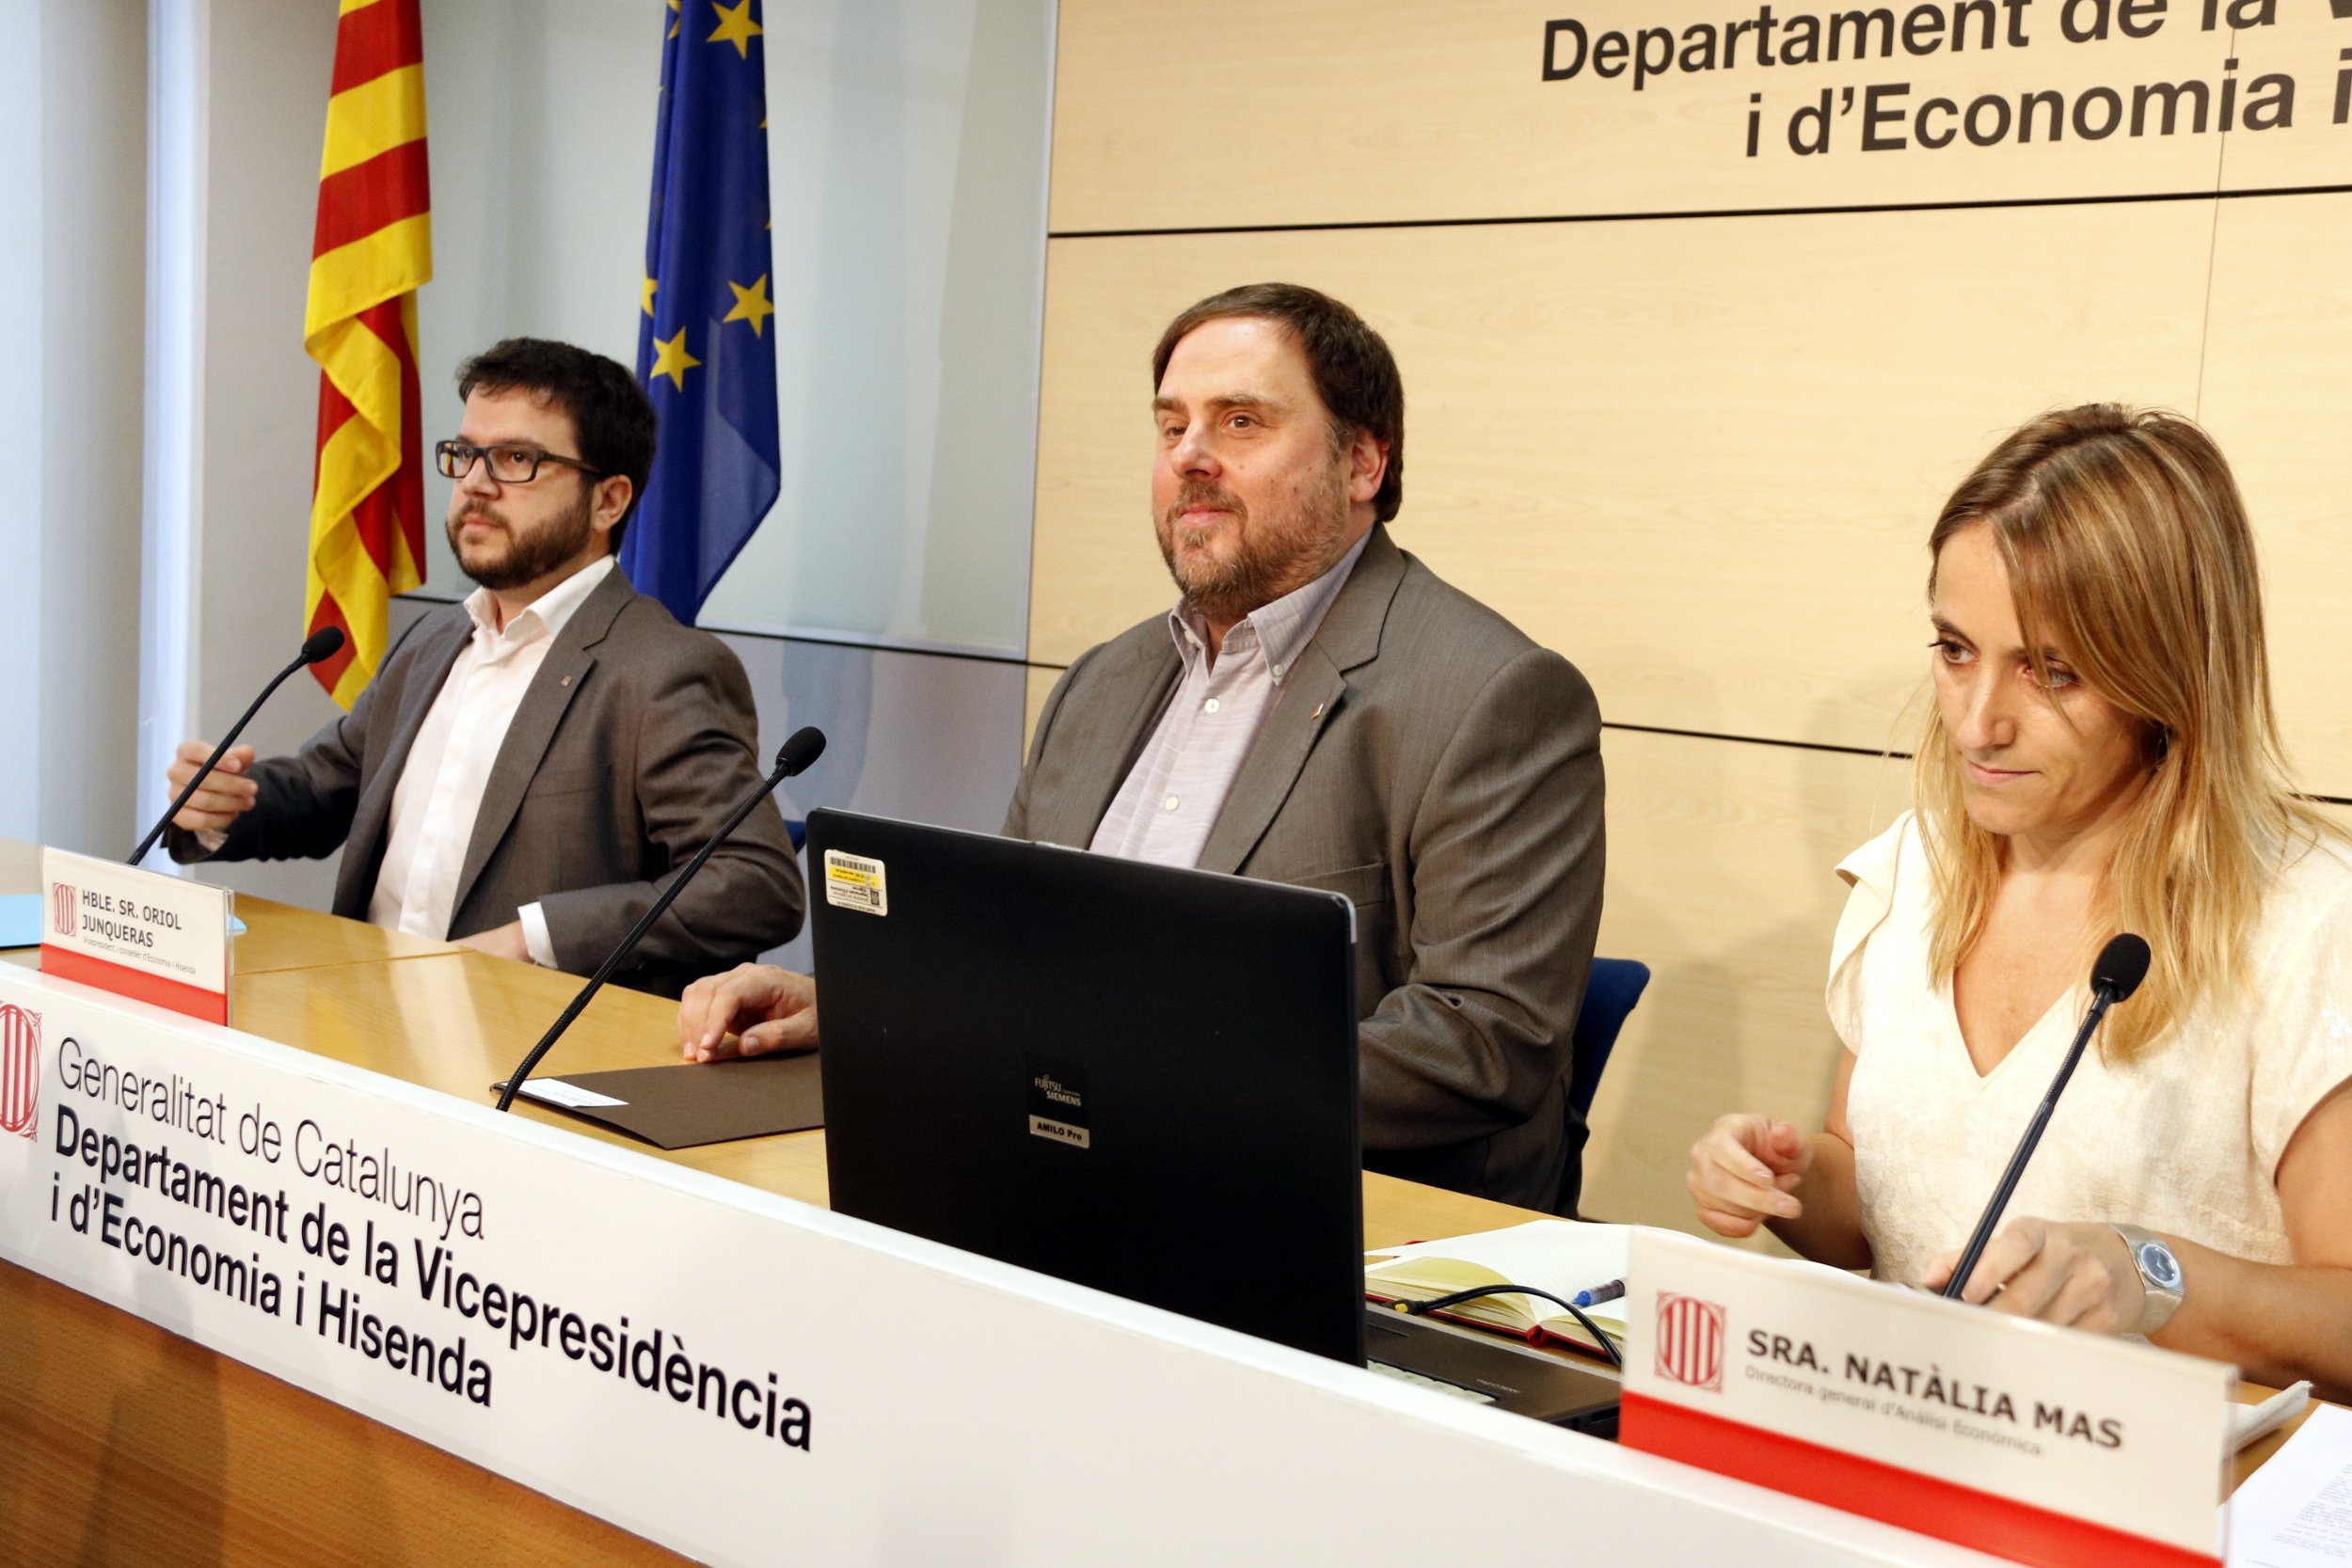 El fil de Twitter que desmenteix el suposat enfonsament de l’economia catalana per l’1-O